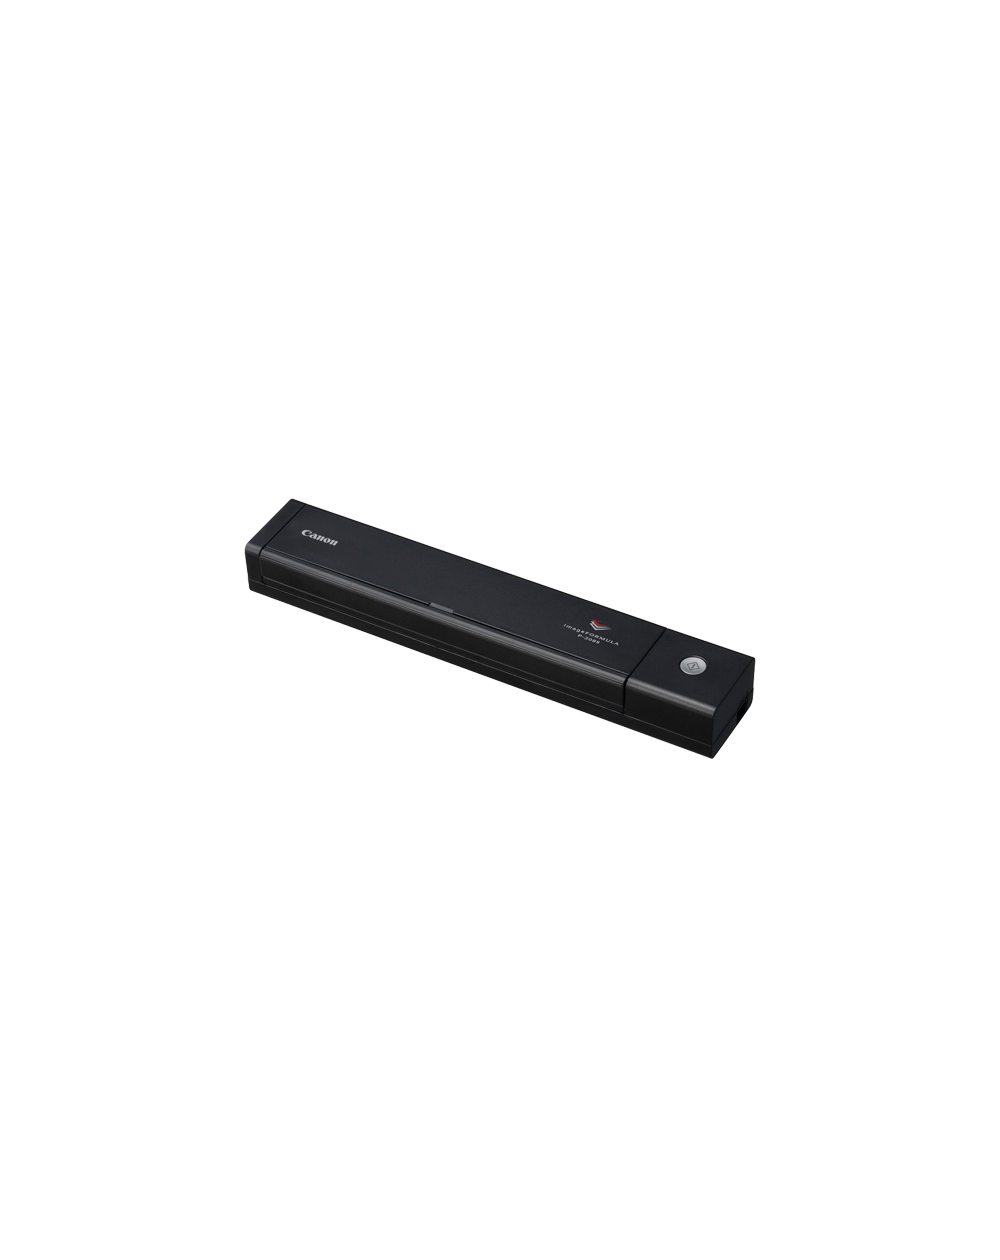 LINKS SOLUTIONS - 🤩🤩🤩 Scanner mobile imageFORMULA P-208II 🤩🤩🤩 Compact  et élégant, le scanner portable P-208II est idéal pour les cadres en  déplacement comme pour les utilisateurs particuliers. Le chargeur  automatique de